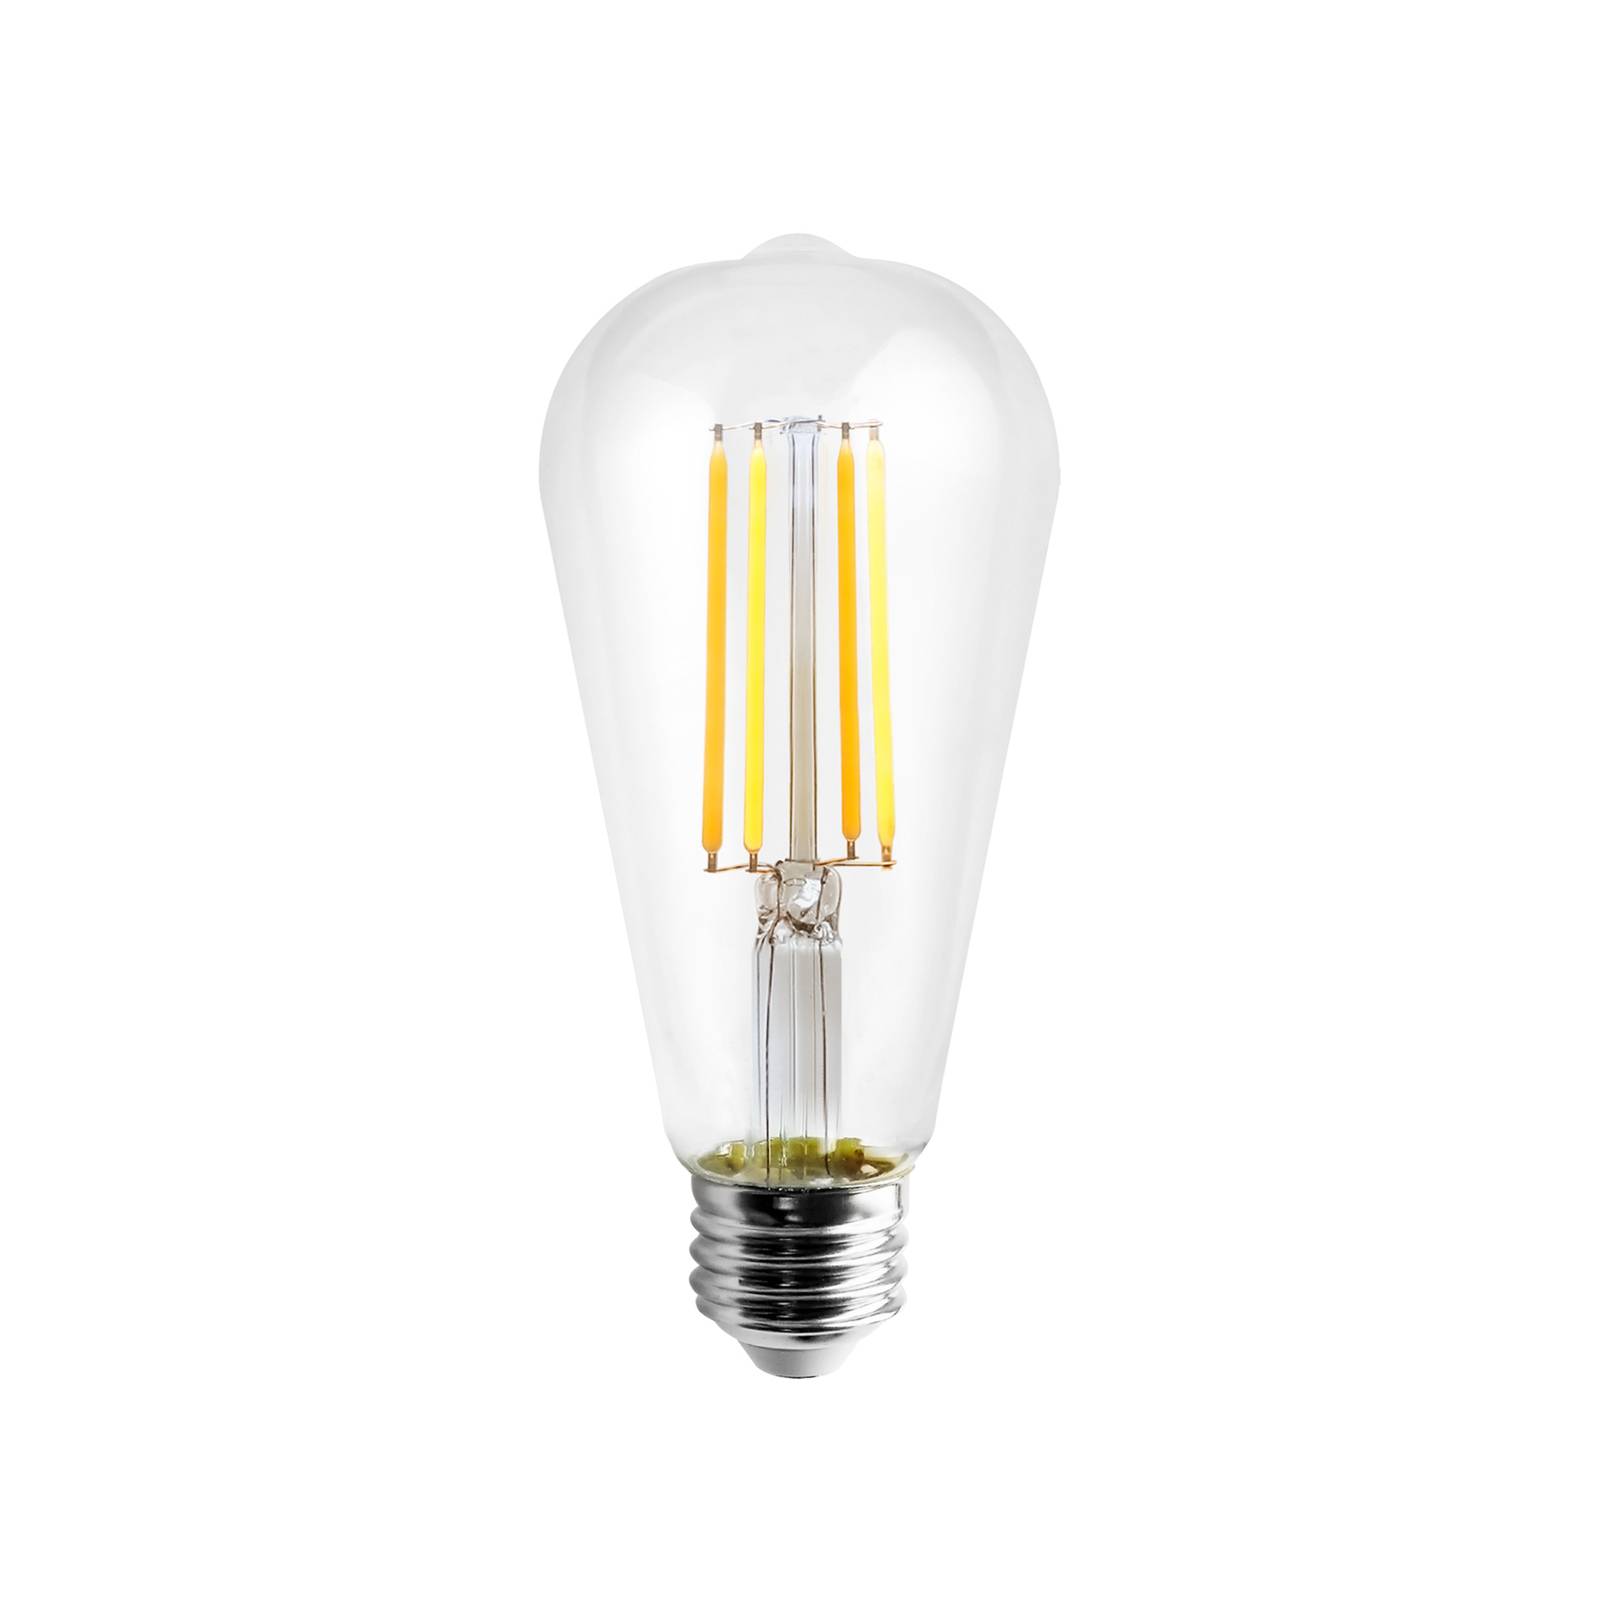 PRIOS Smart LED E27 4,5W tunable white WLAN Tuya